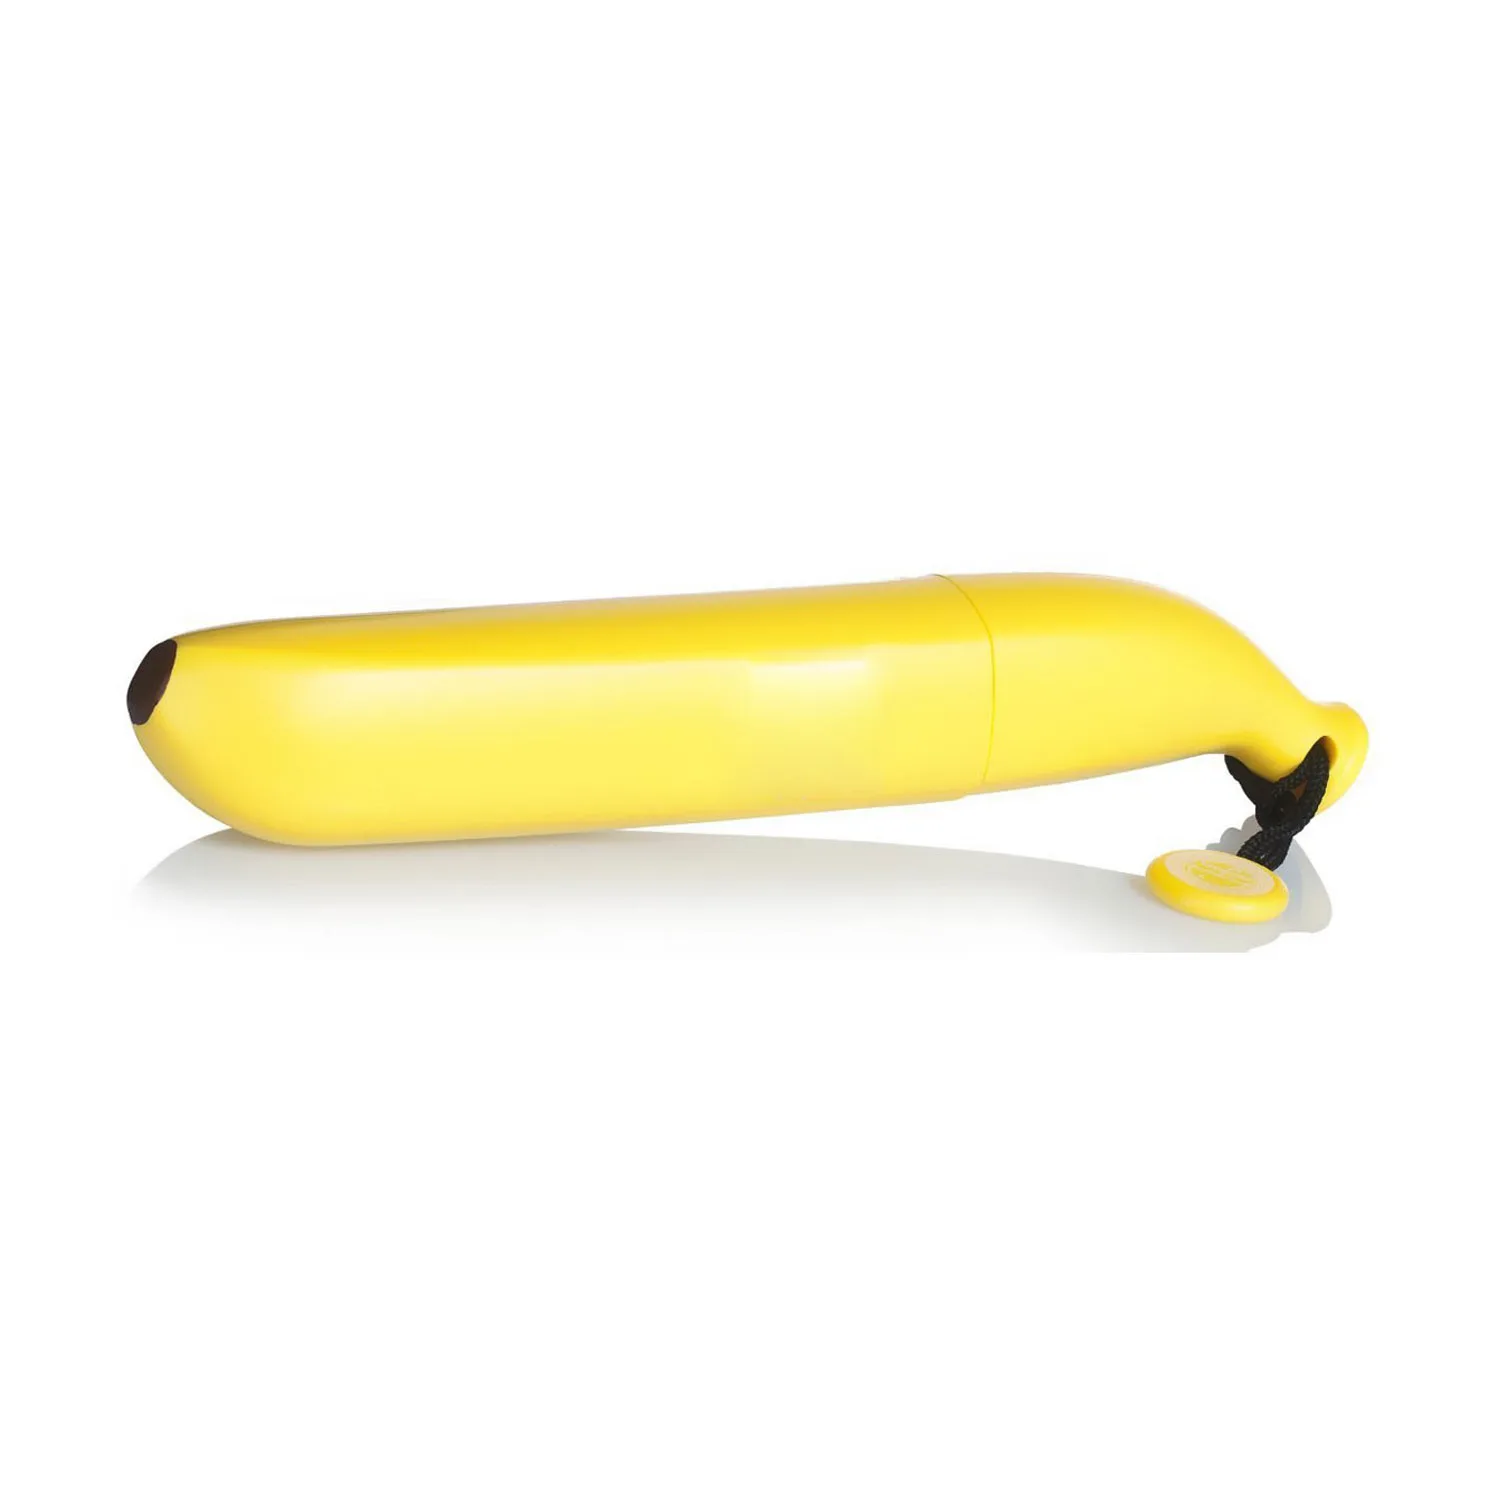 Популярный зонт-банан, складной зонт-банан, желтый